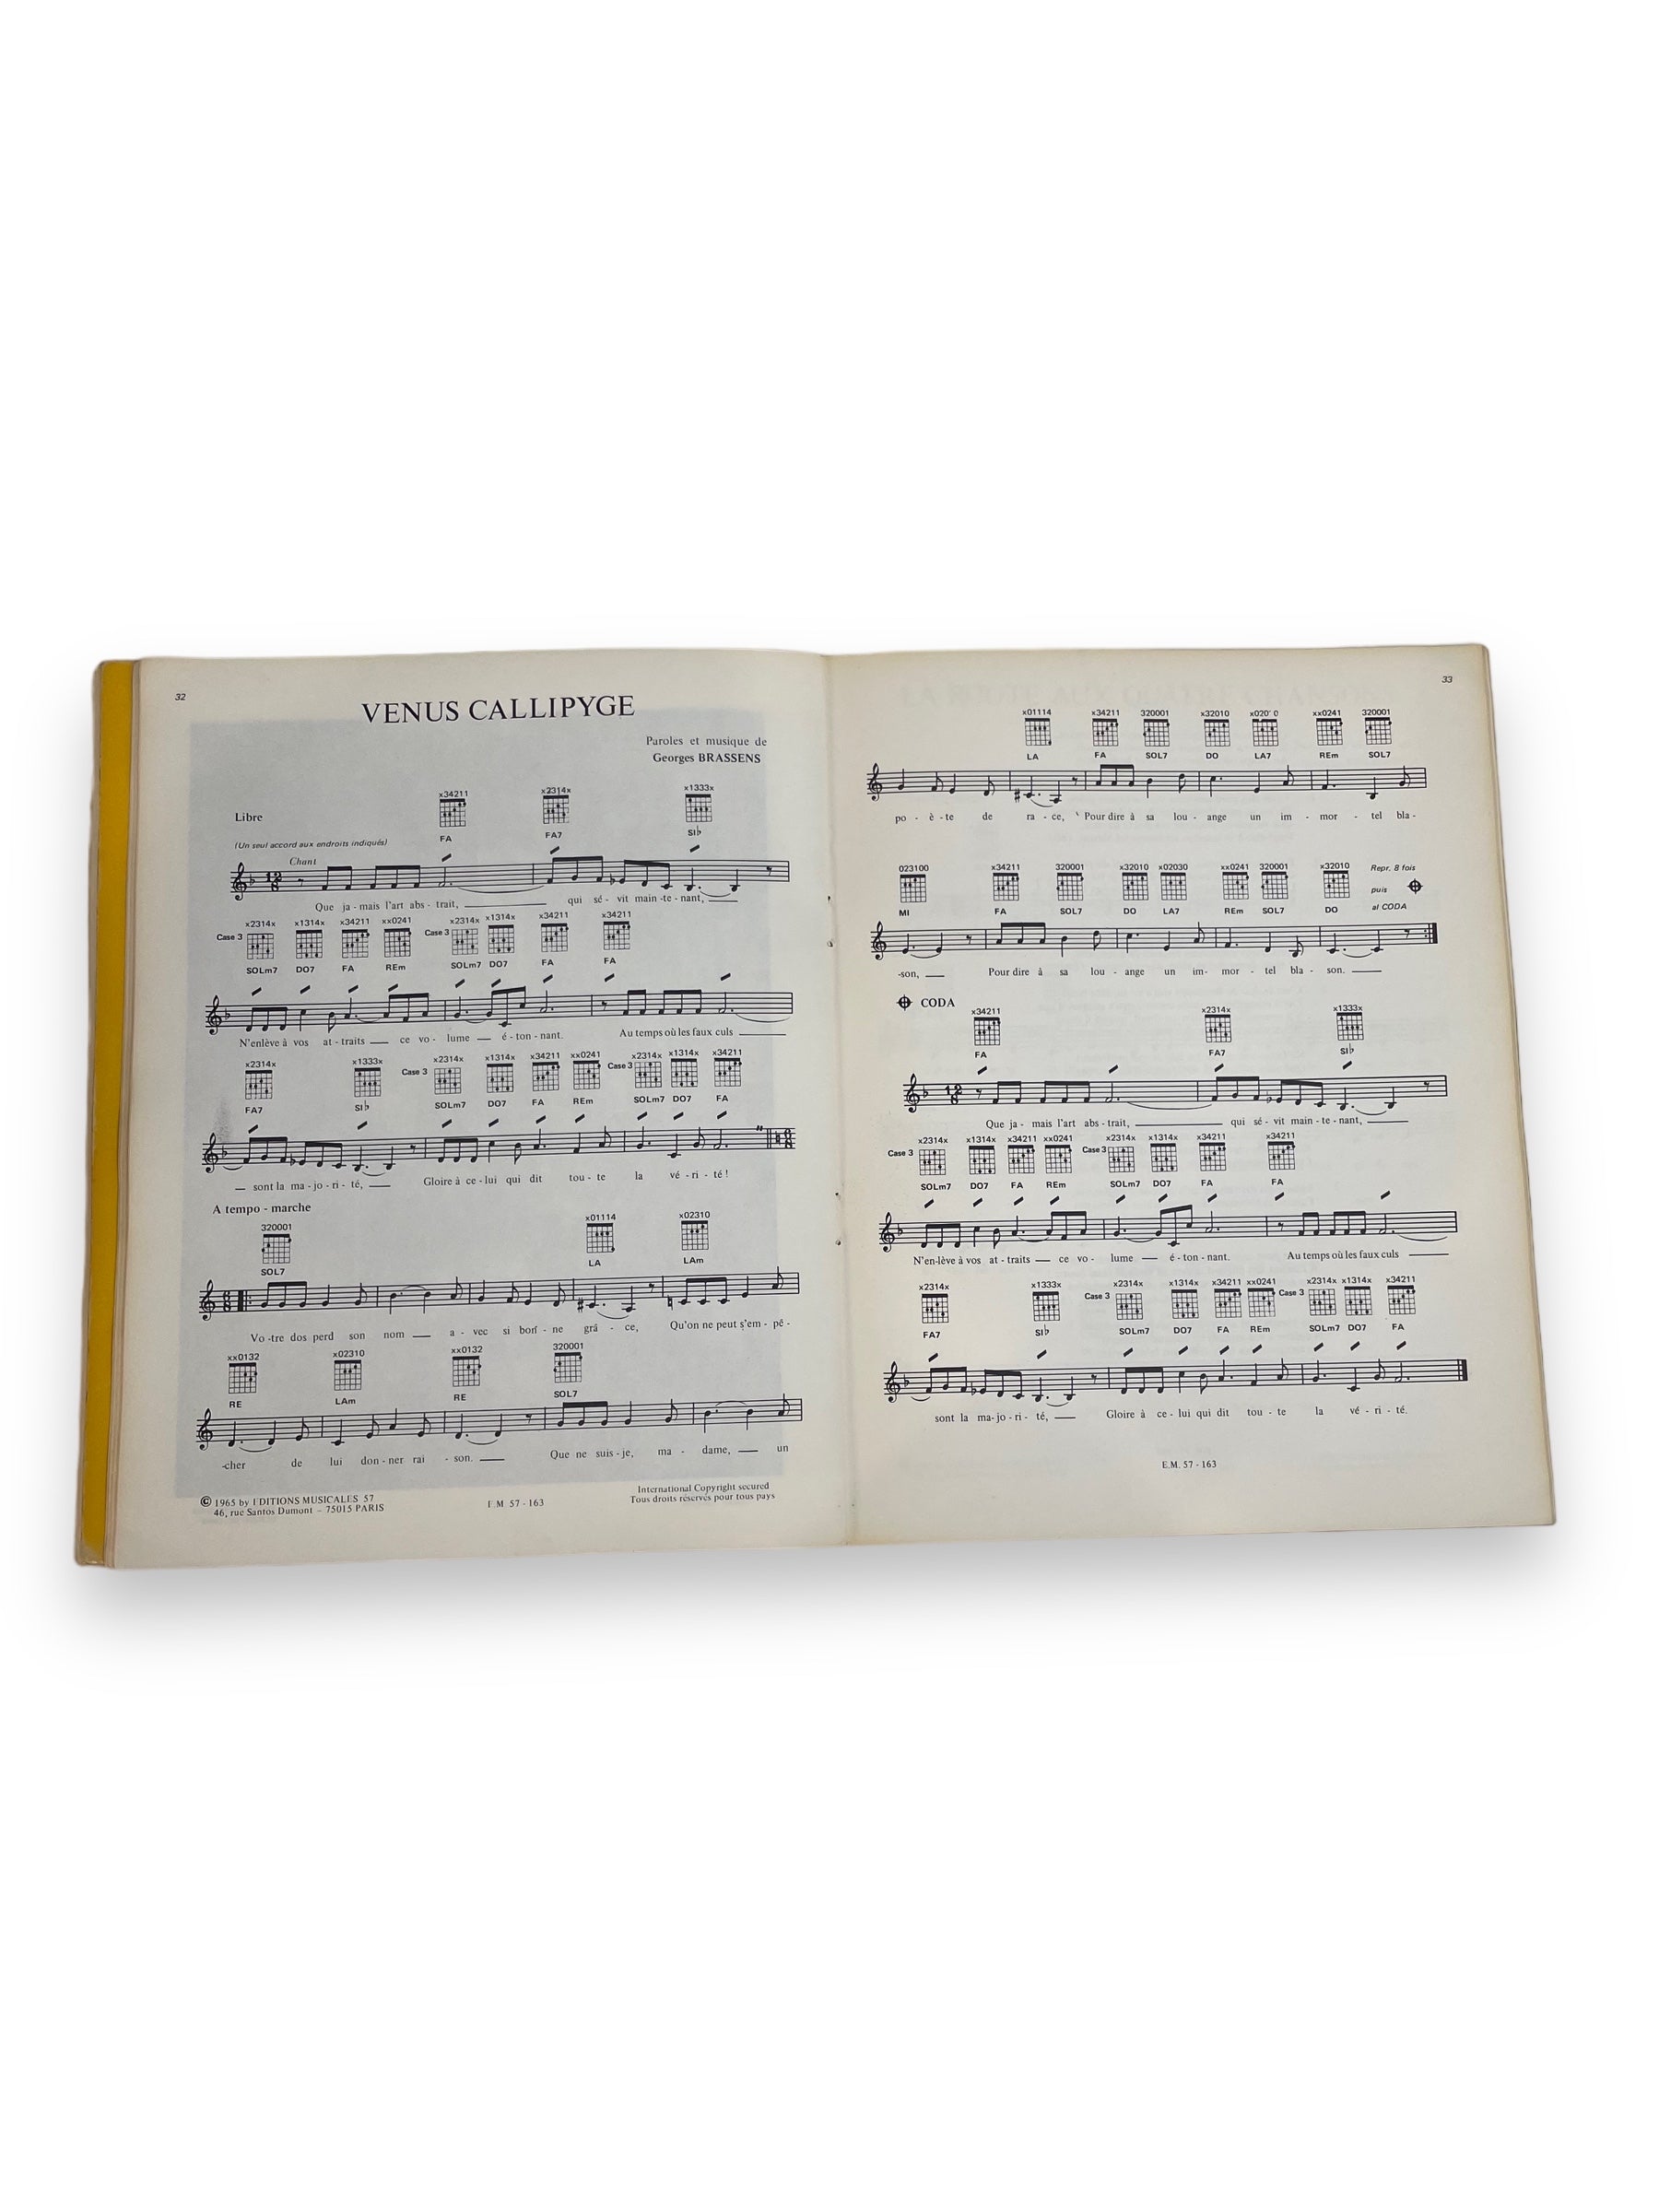  Lot de deux recueils de partitions musicales de Georges Brassens